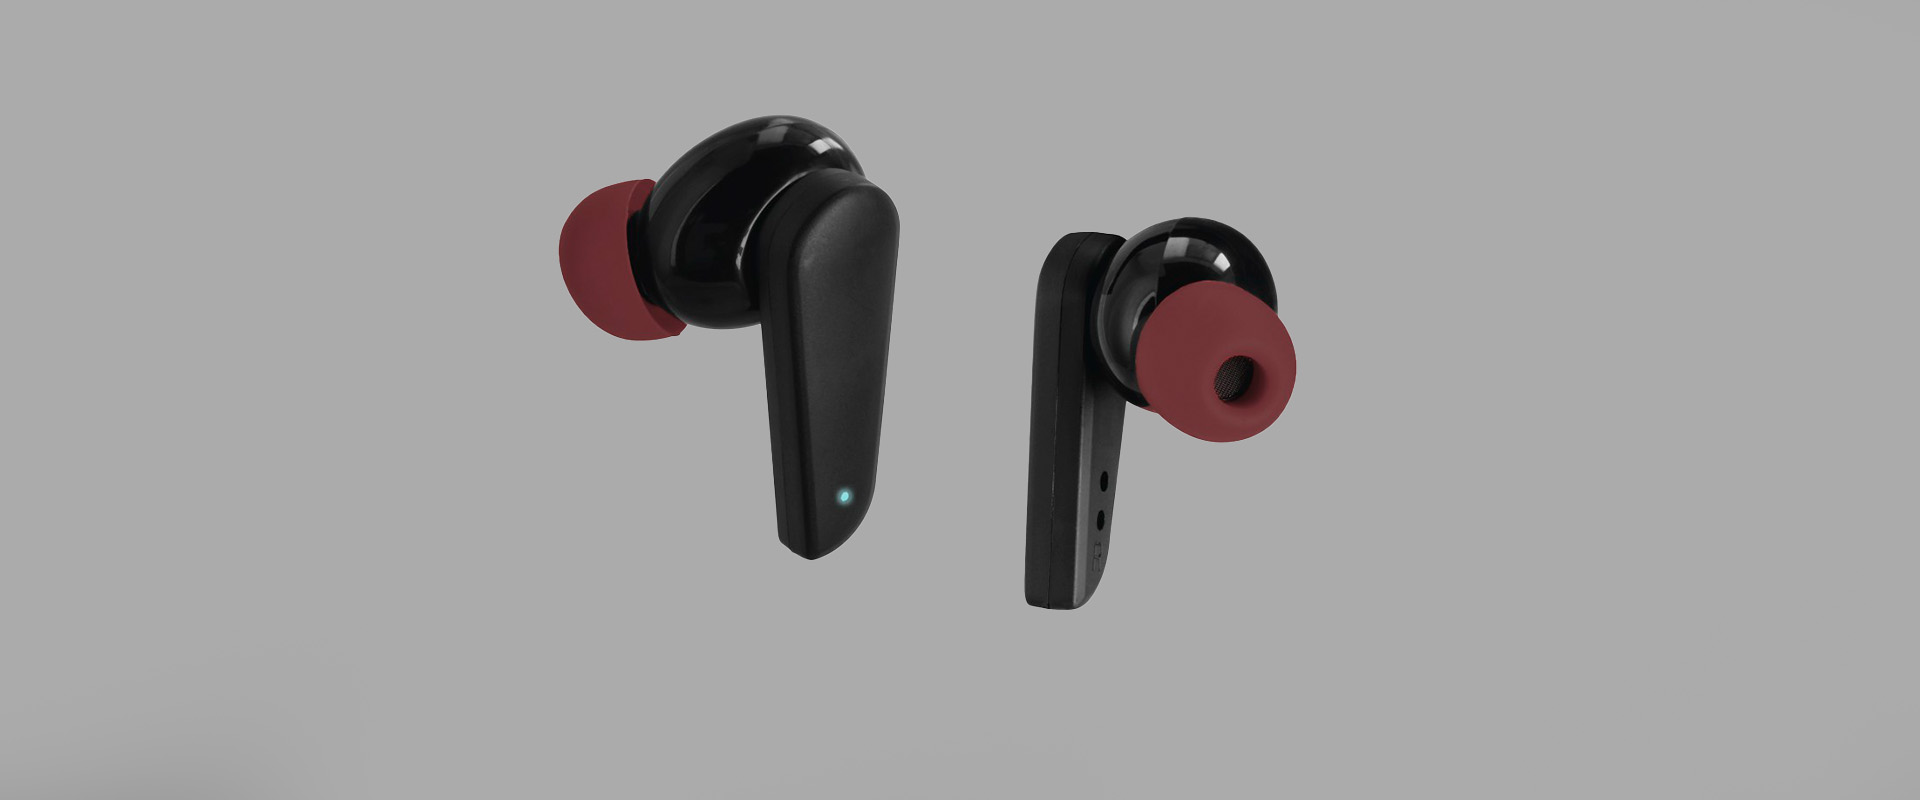 Słuchawki mobilne Hama TWS Spirit Pocket z obsługą dotykową i głosową